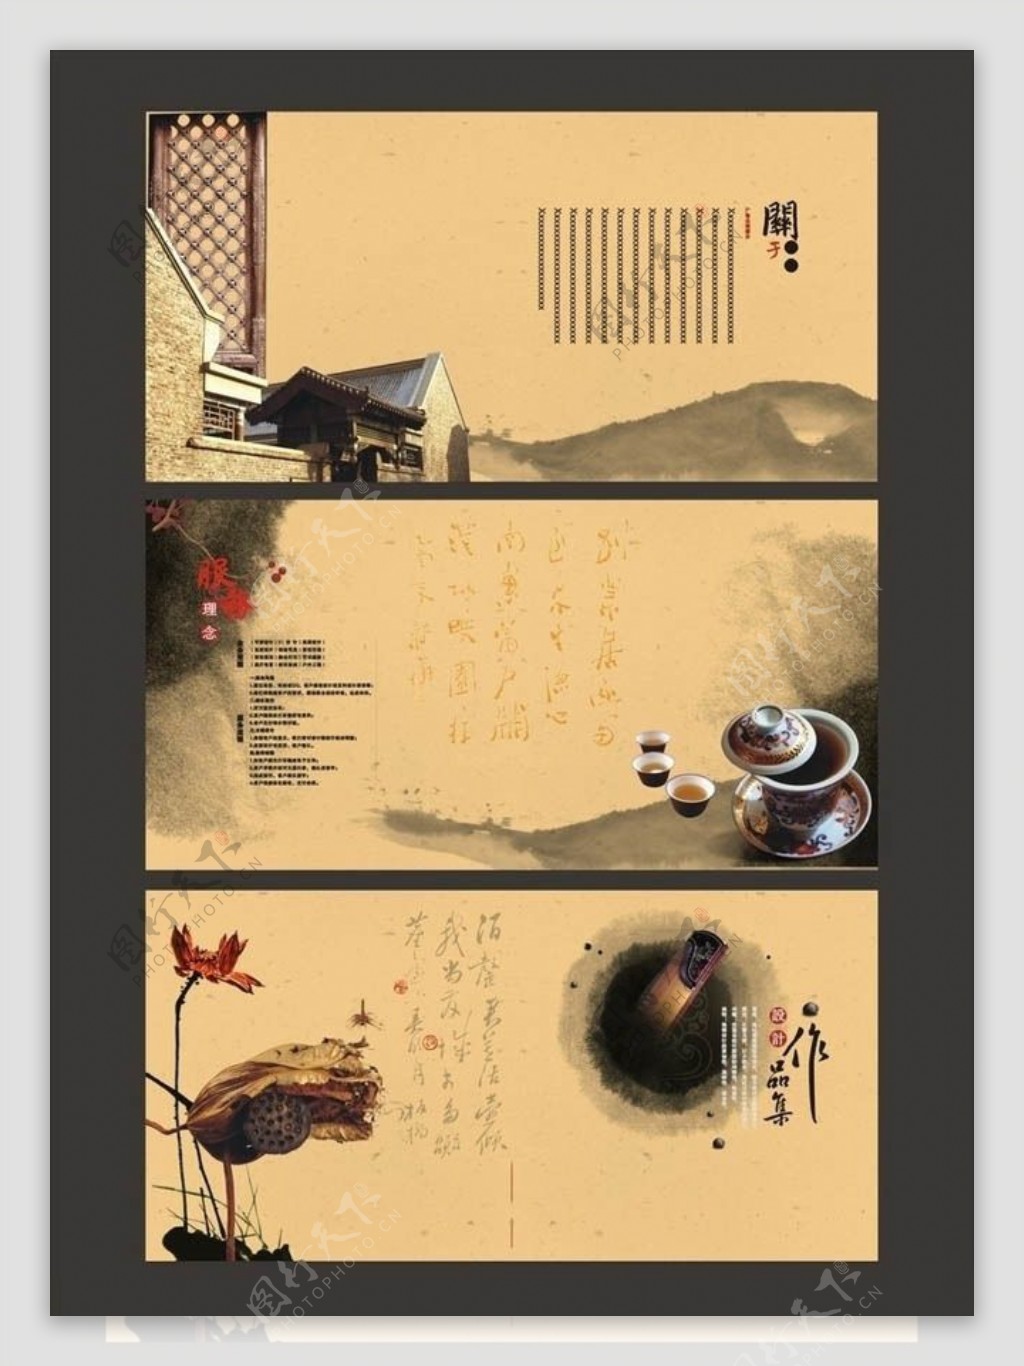 中国风企业宣传画册设计矢量素材